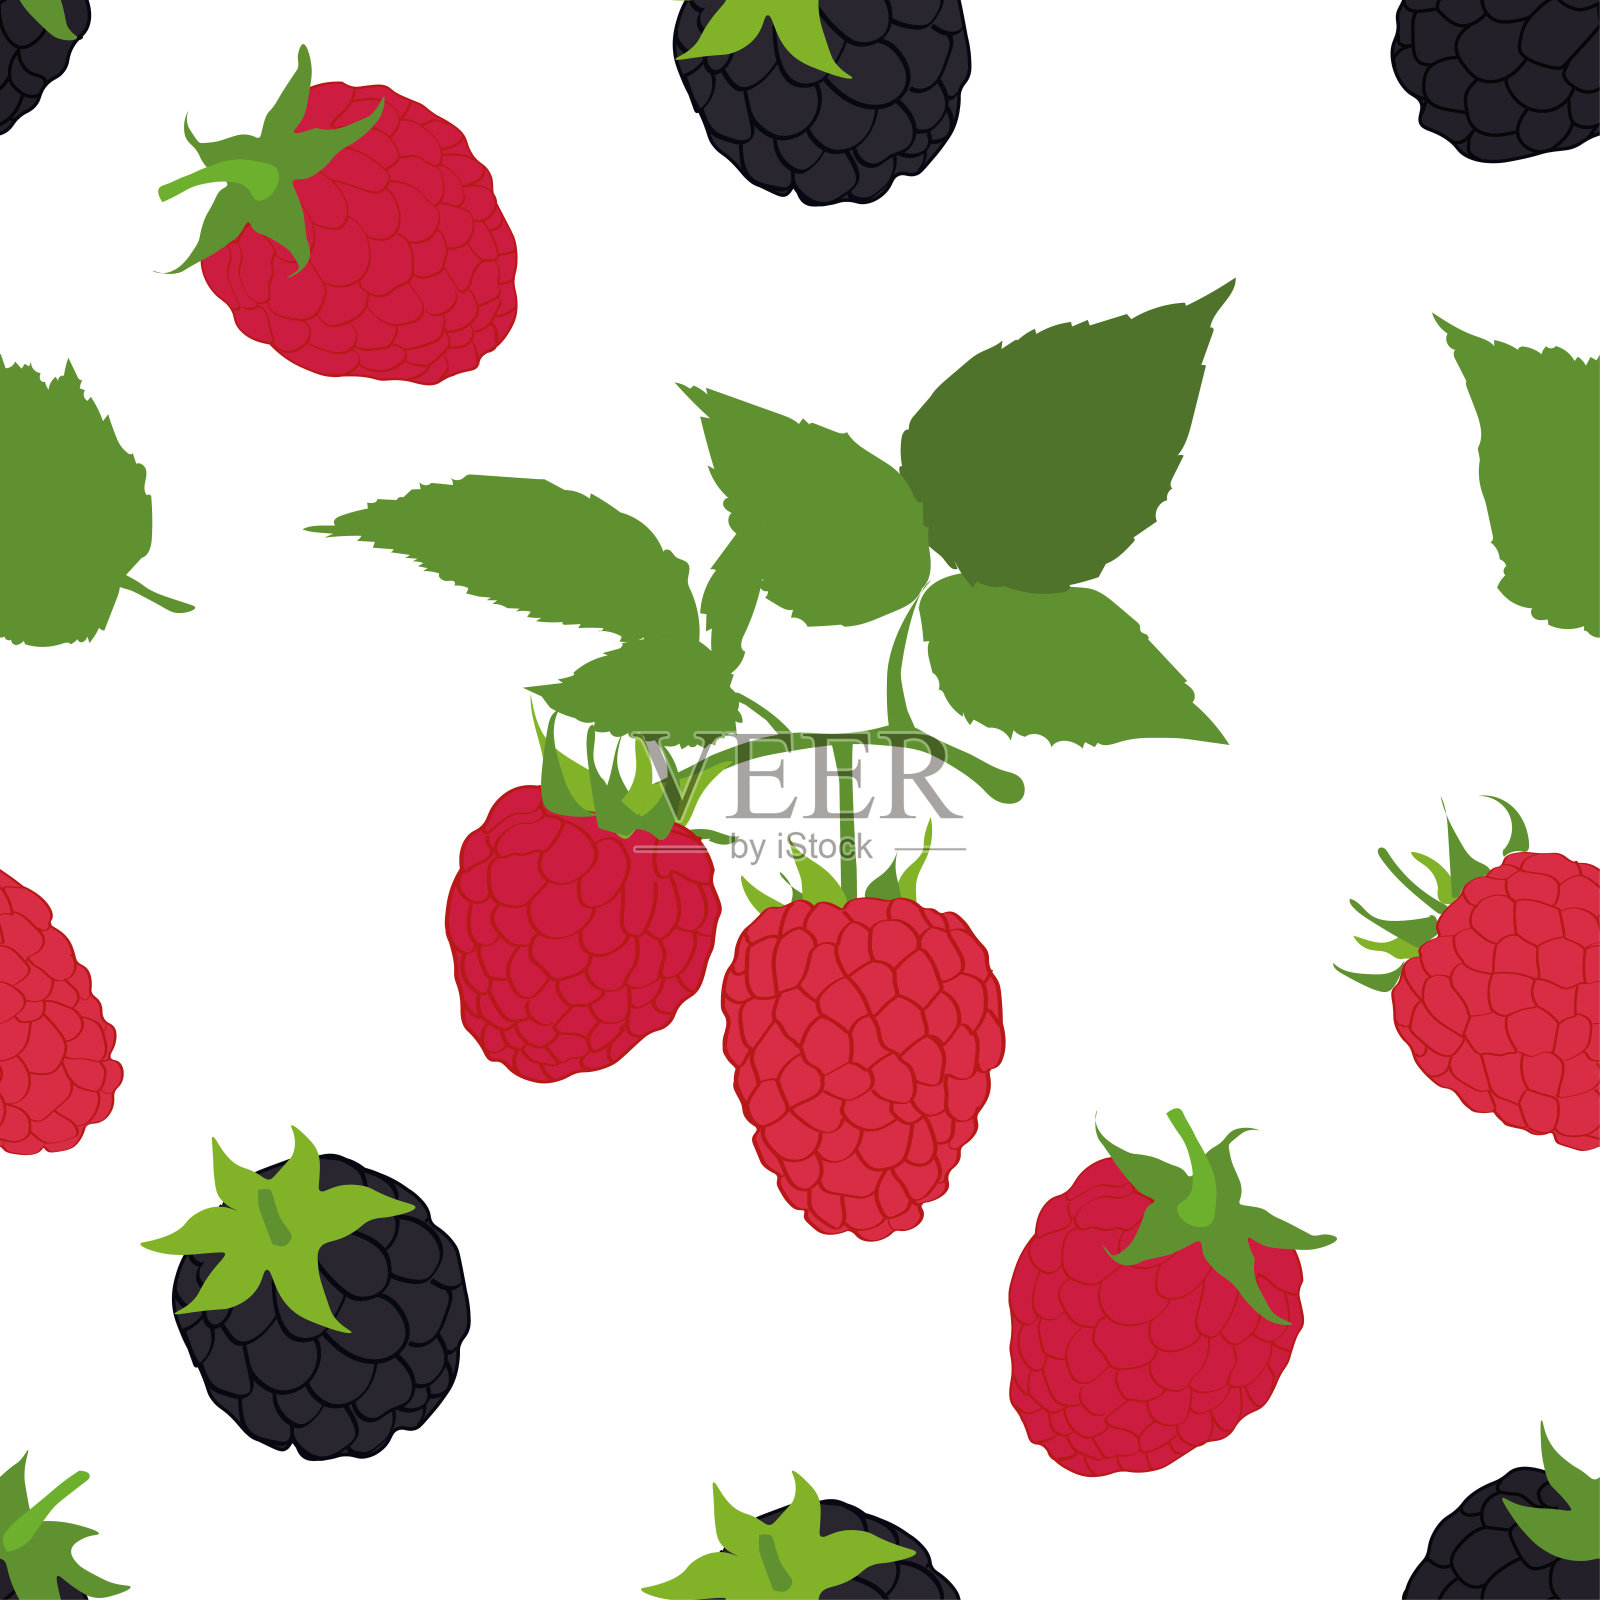 黑莓和覆盆子的叶子孤立在白色的背景。插画图片素材